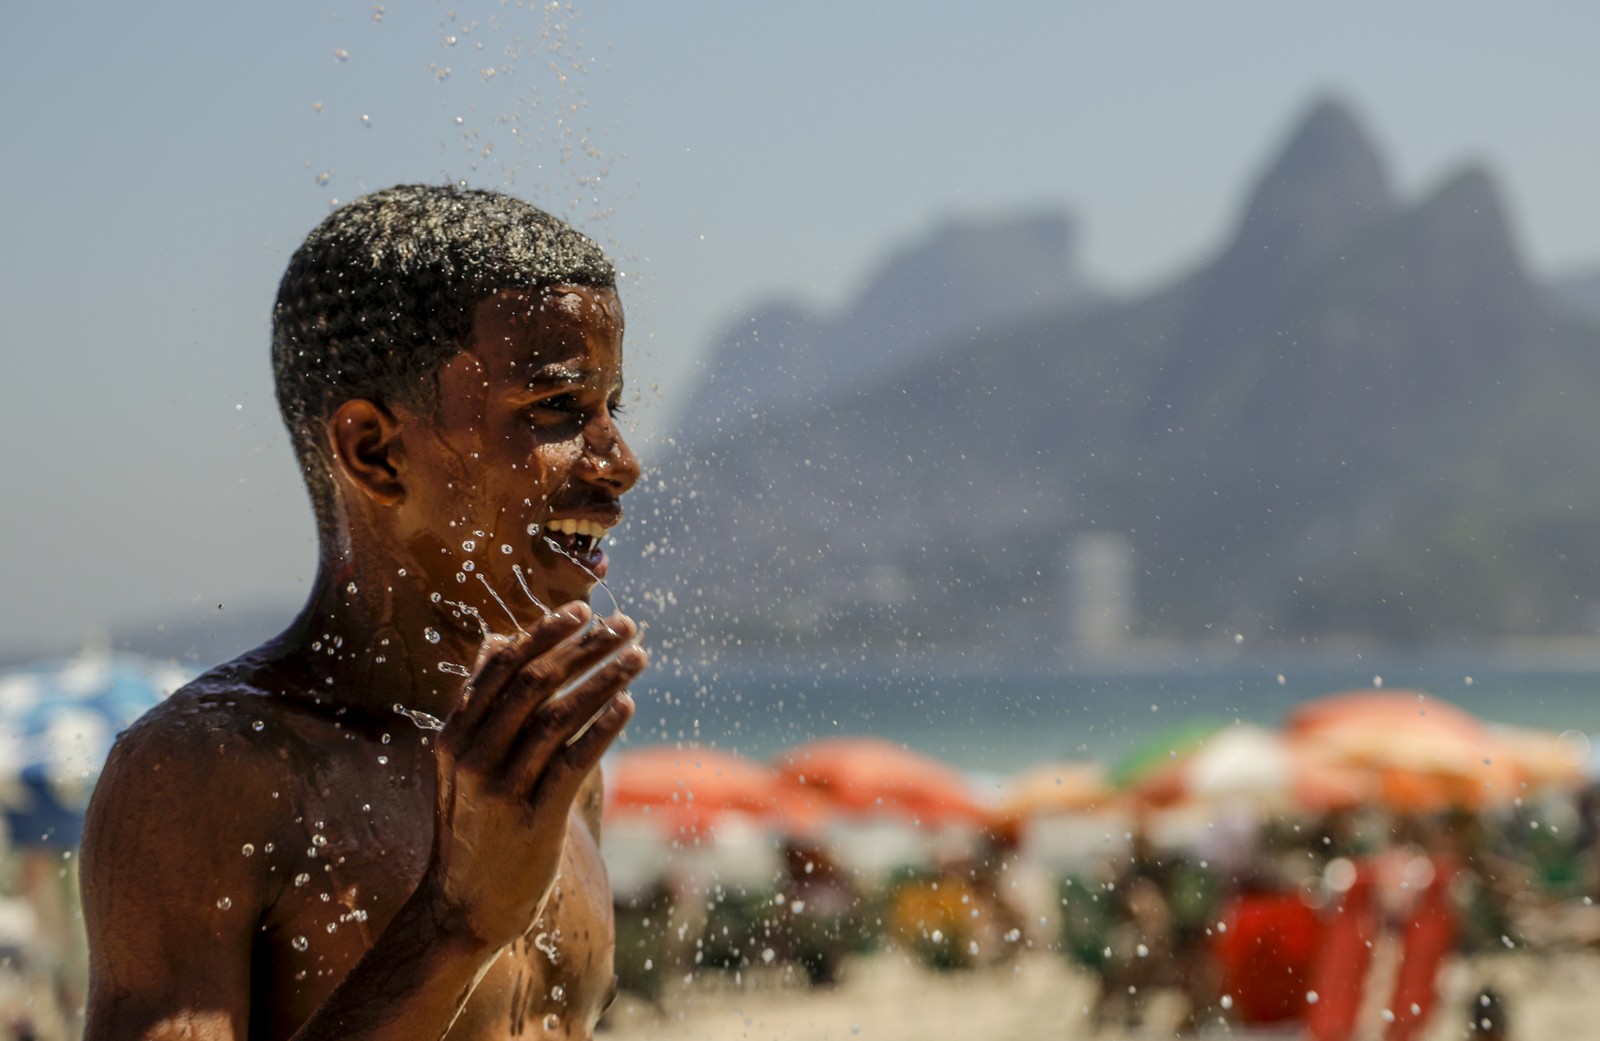 Dia de calor e sol forte no Arpoador — Foto: Gabriel de Paiva/Agência O Globo